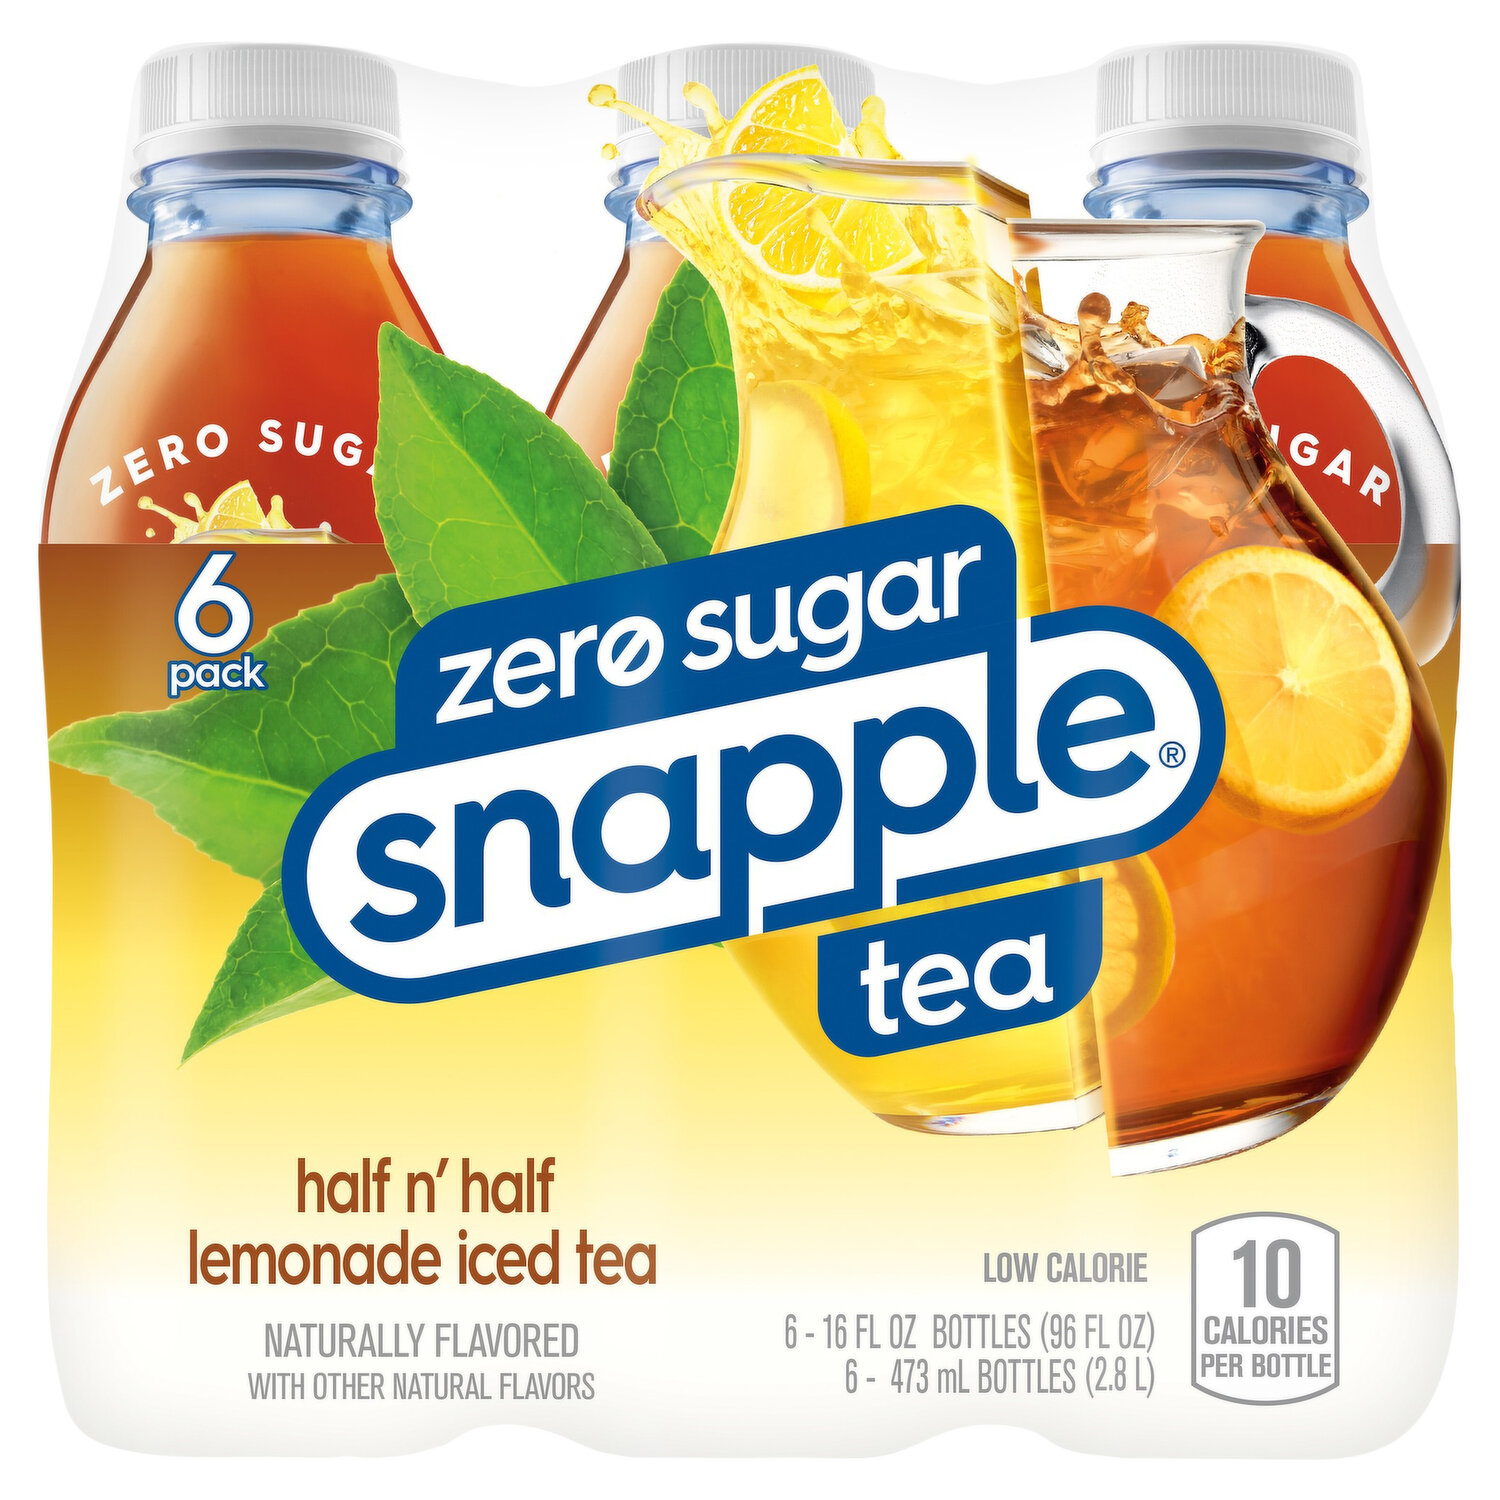 Snapple Snapple Peach Tea, 16 Fl Oz Glass Bottles, 6 Pack